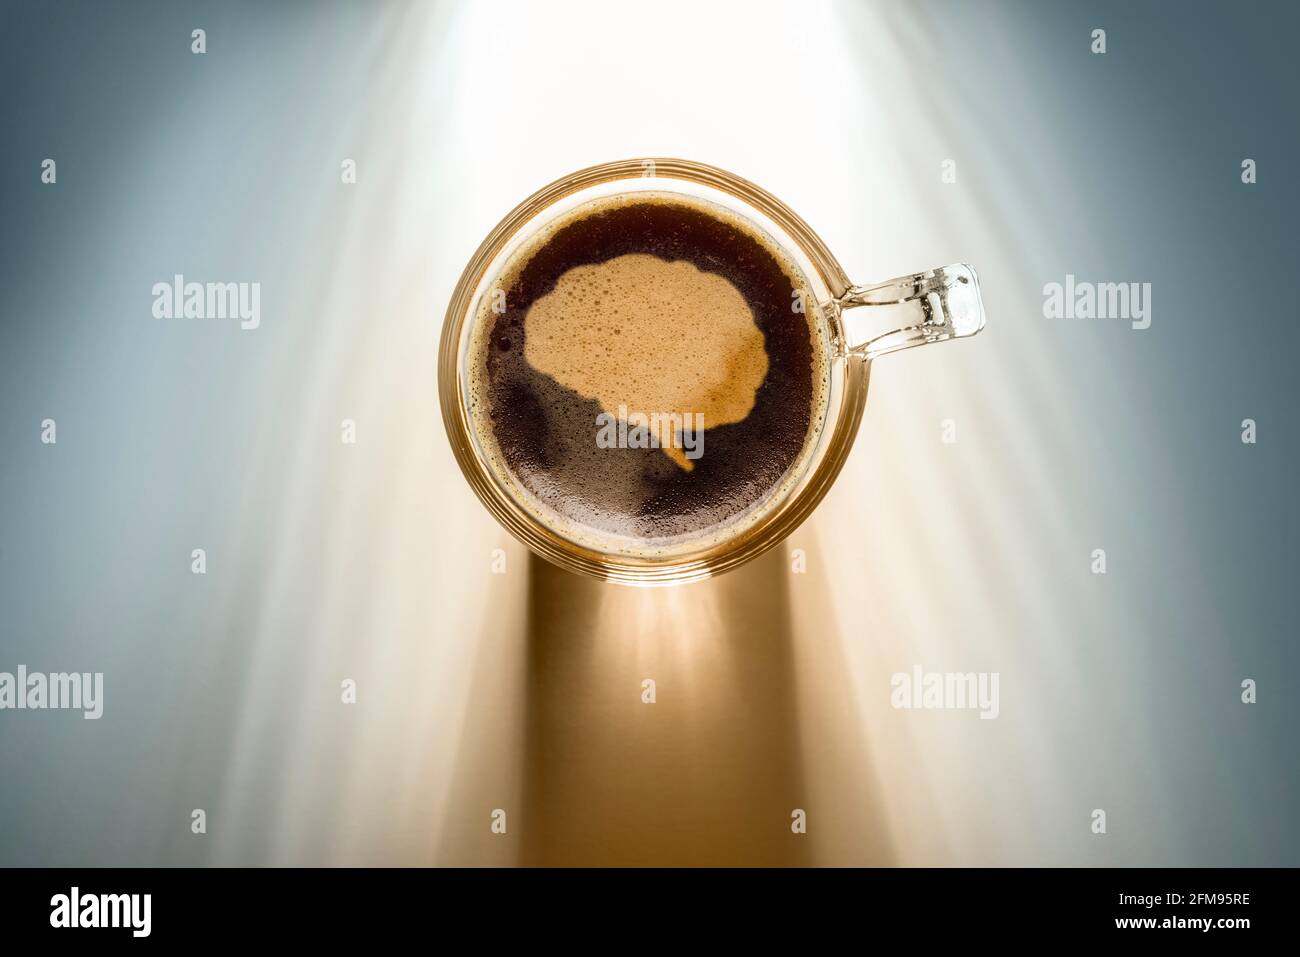 Kaffeetasse mit Hirn-Symbol, Draufsicht auf dem Hintergrund mit Sonnenlicht. Stockfoto